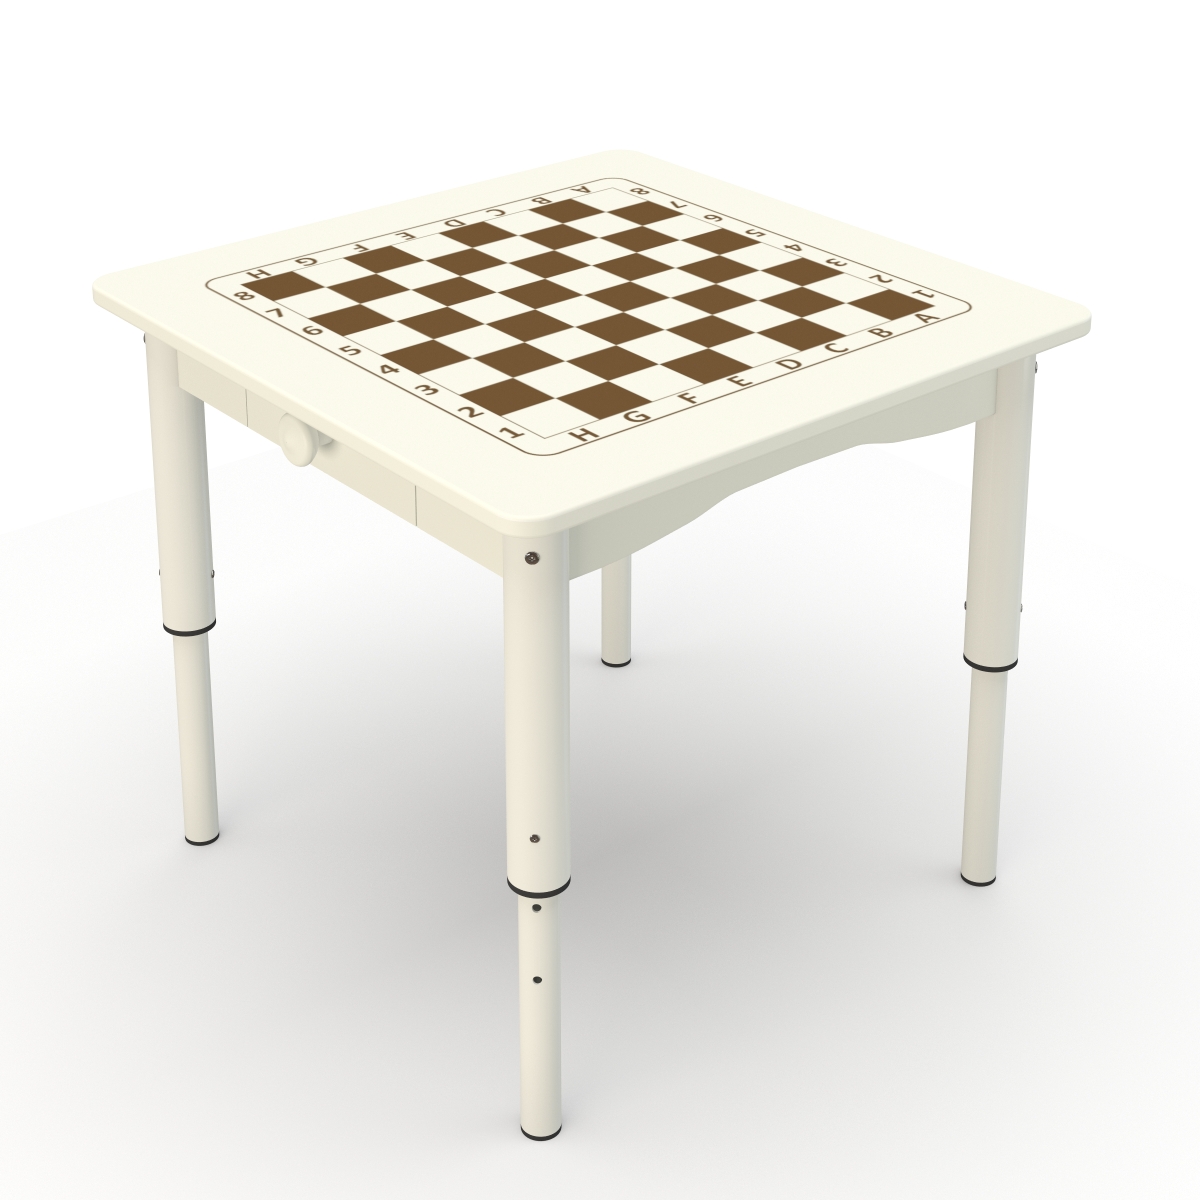 Стол с шахматной доской на регулируемых ножках